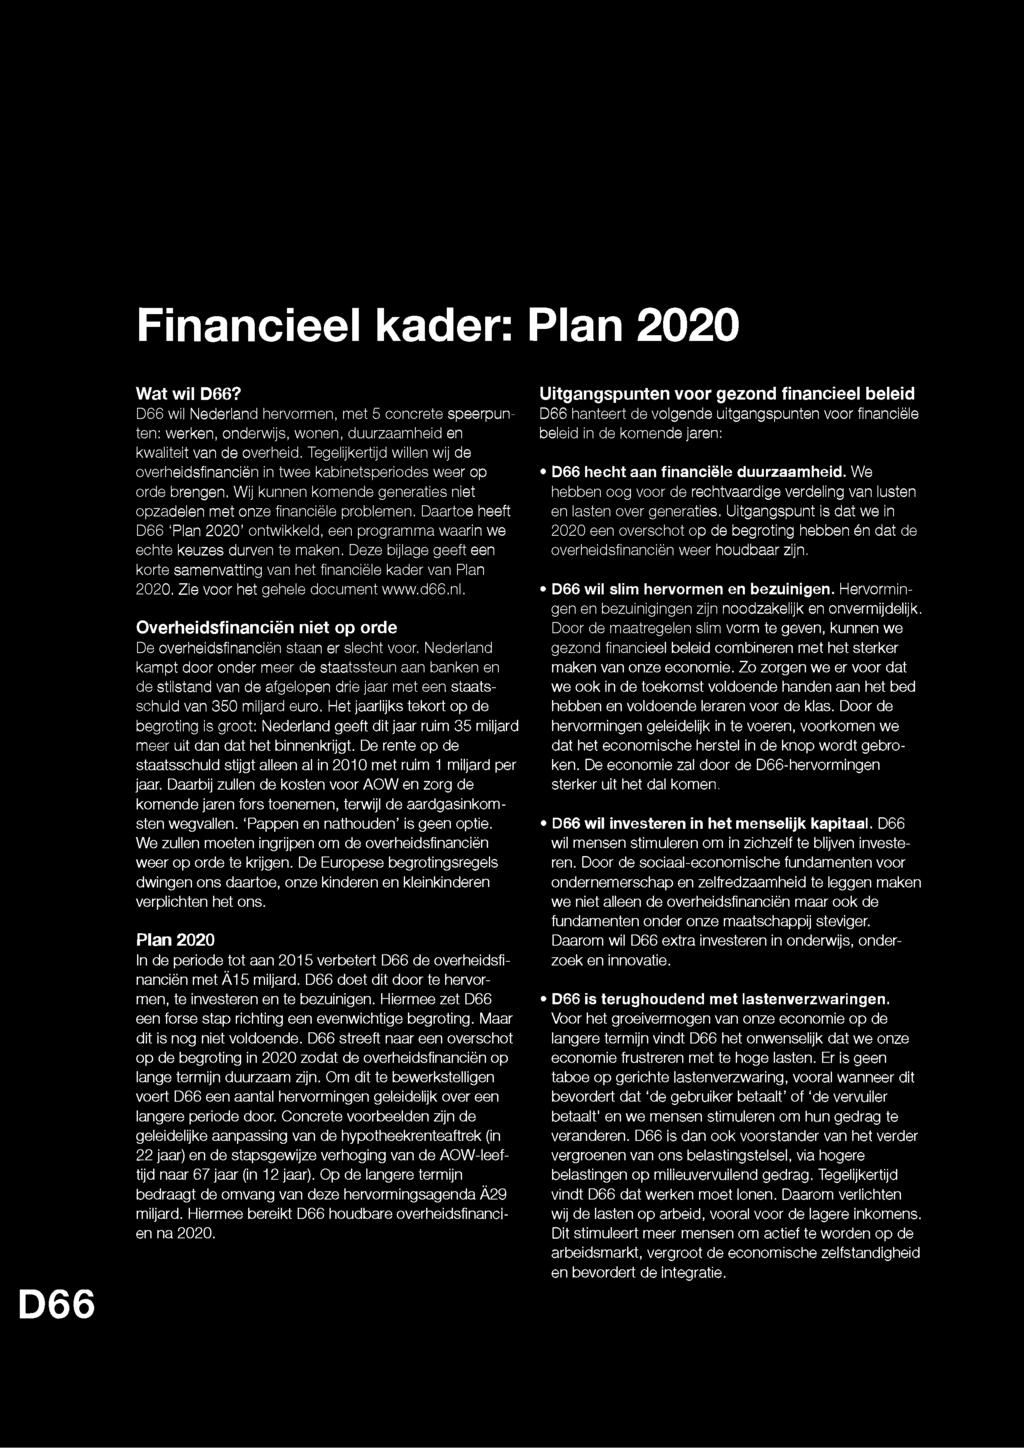 Daartoe heeft D66 Plan 2020 ontwikkeld, een programma waarin we echte keuzes durven te maken. Deze bijlage geeft een korte samenvatting van het financiële kader van Plan 2020.